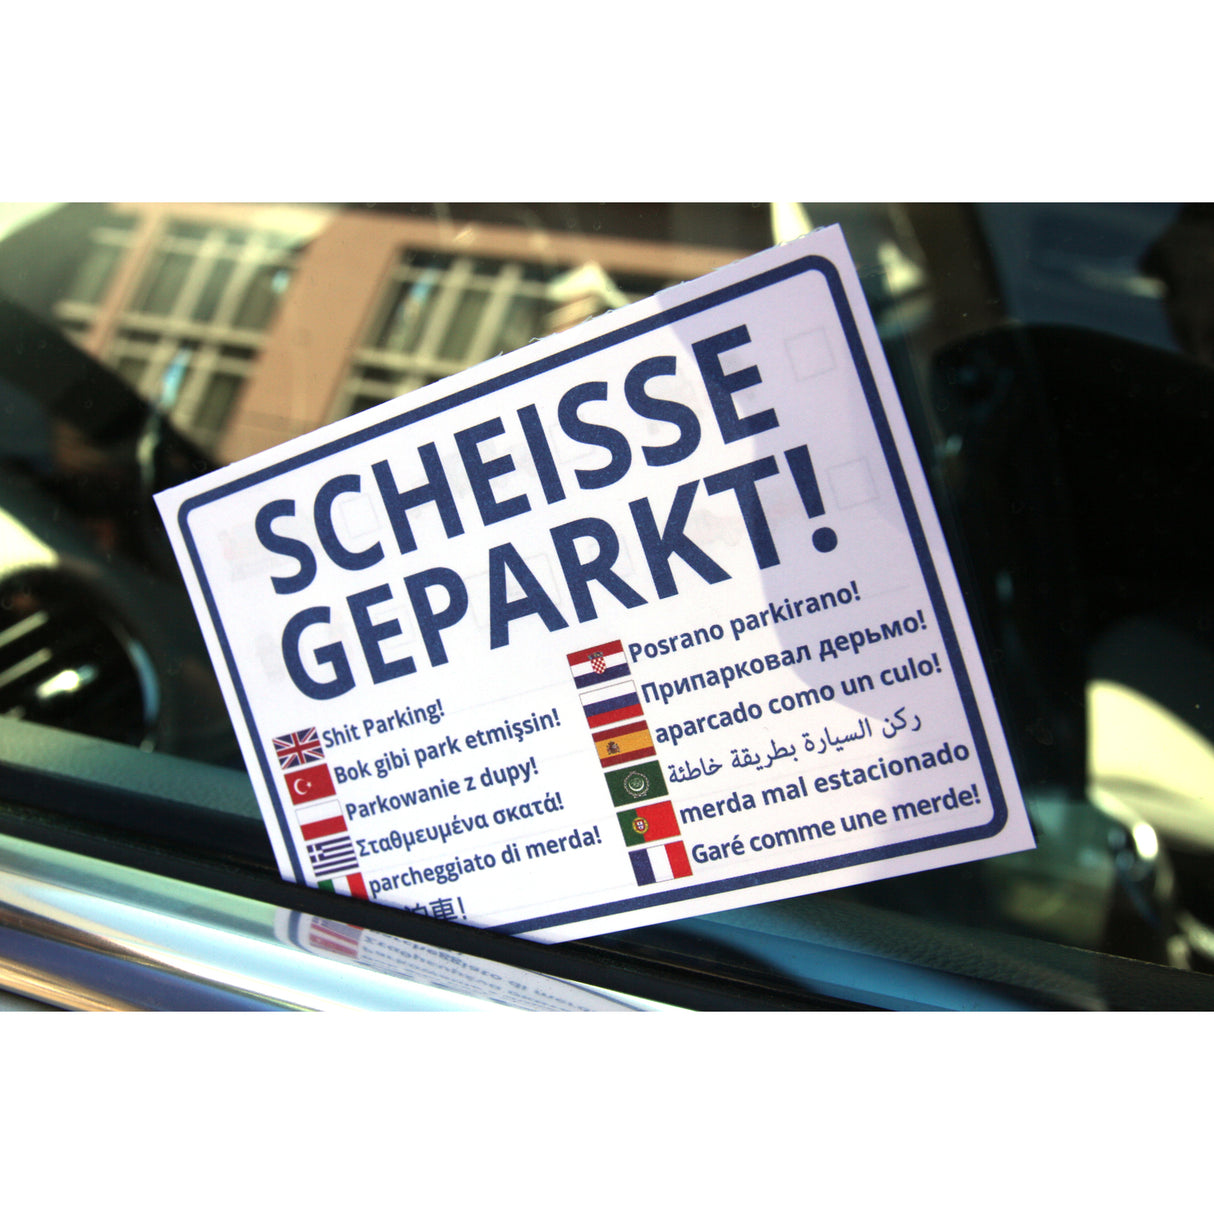 Scheisse Geparkt! International Edition Notizblock für die Windschutzscheibe mit 50 Blatt